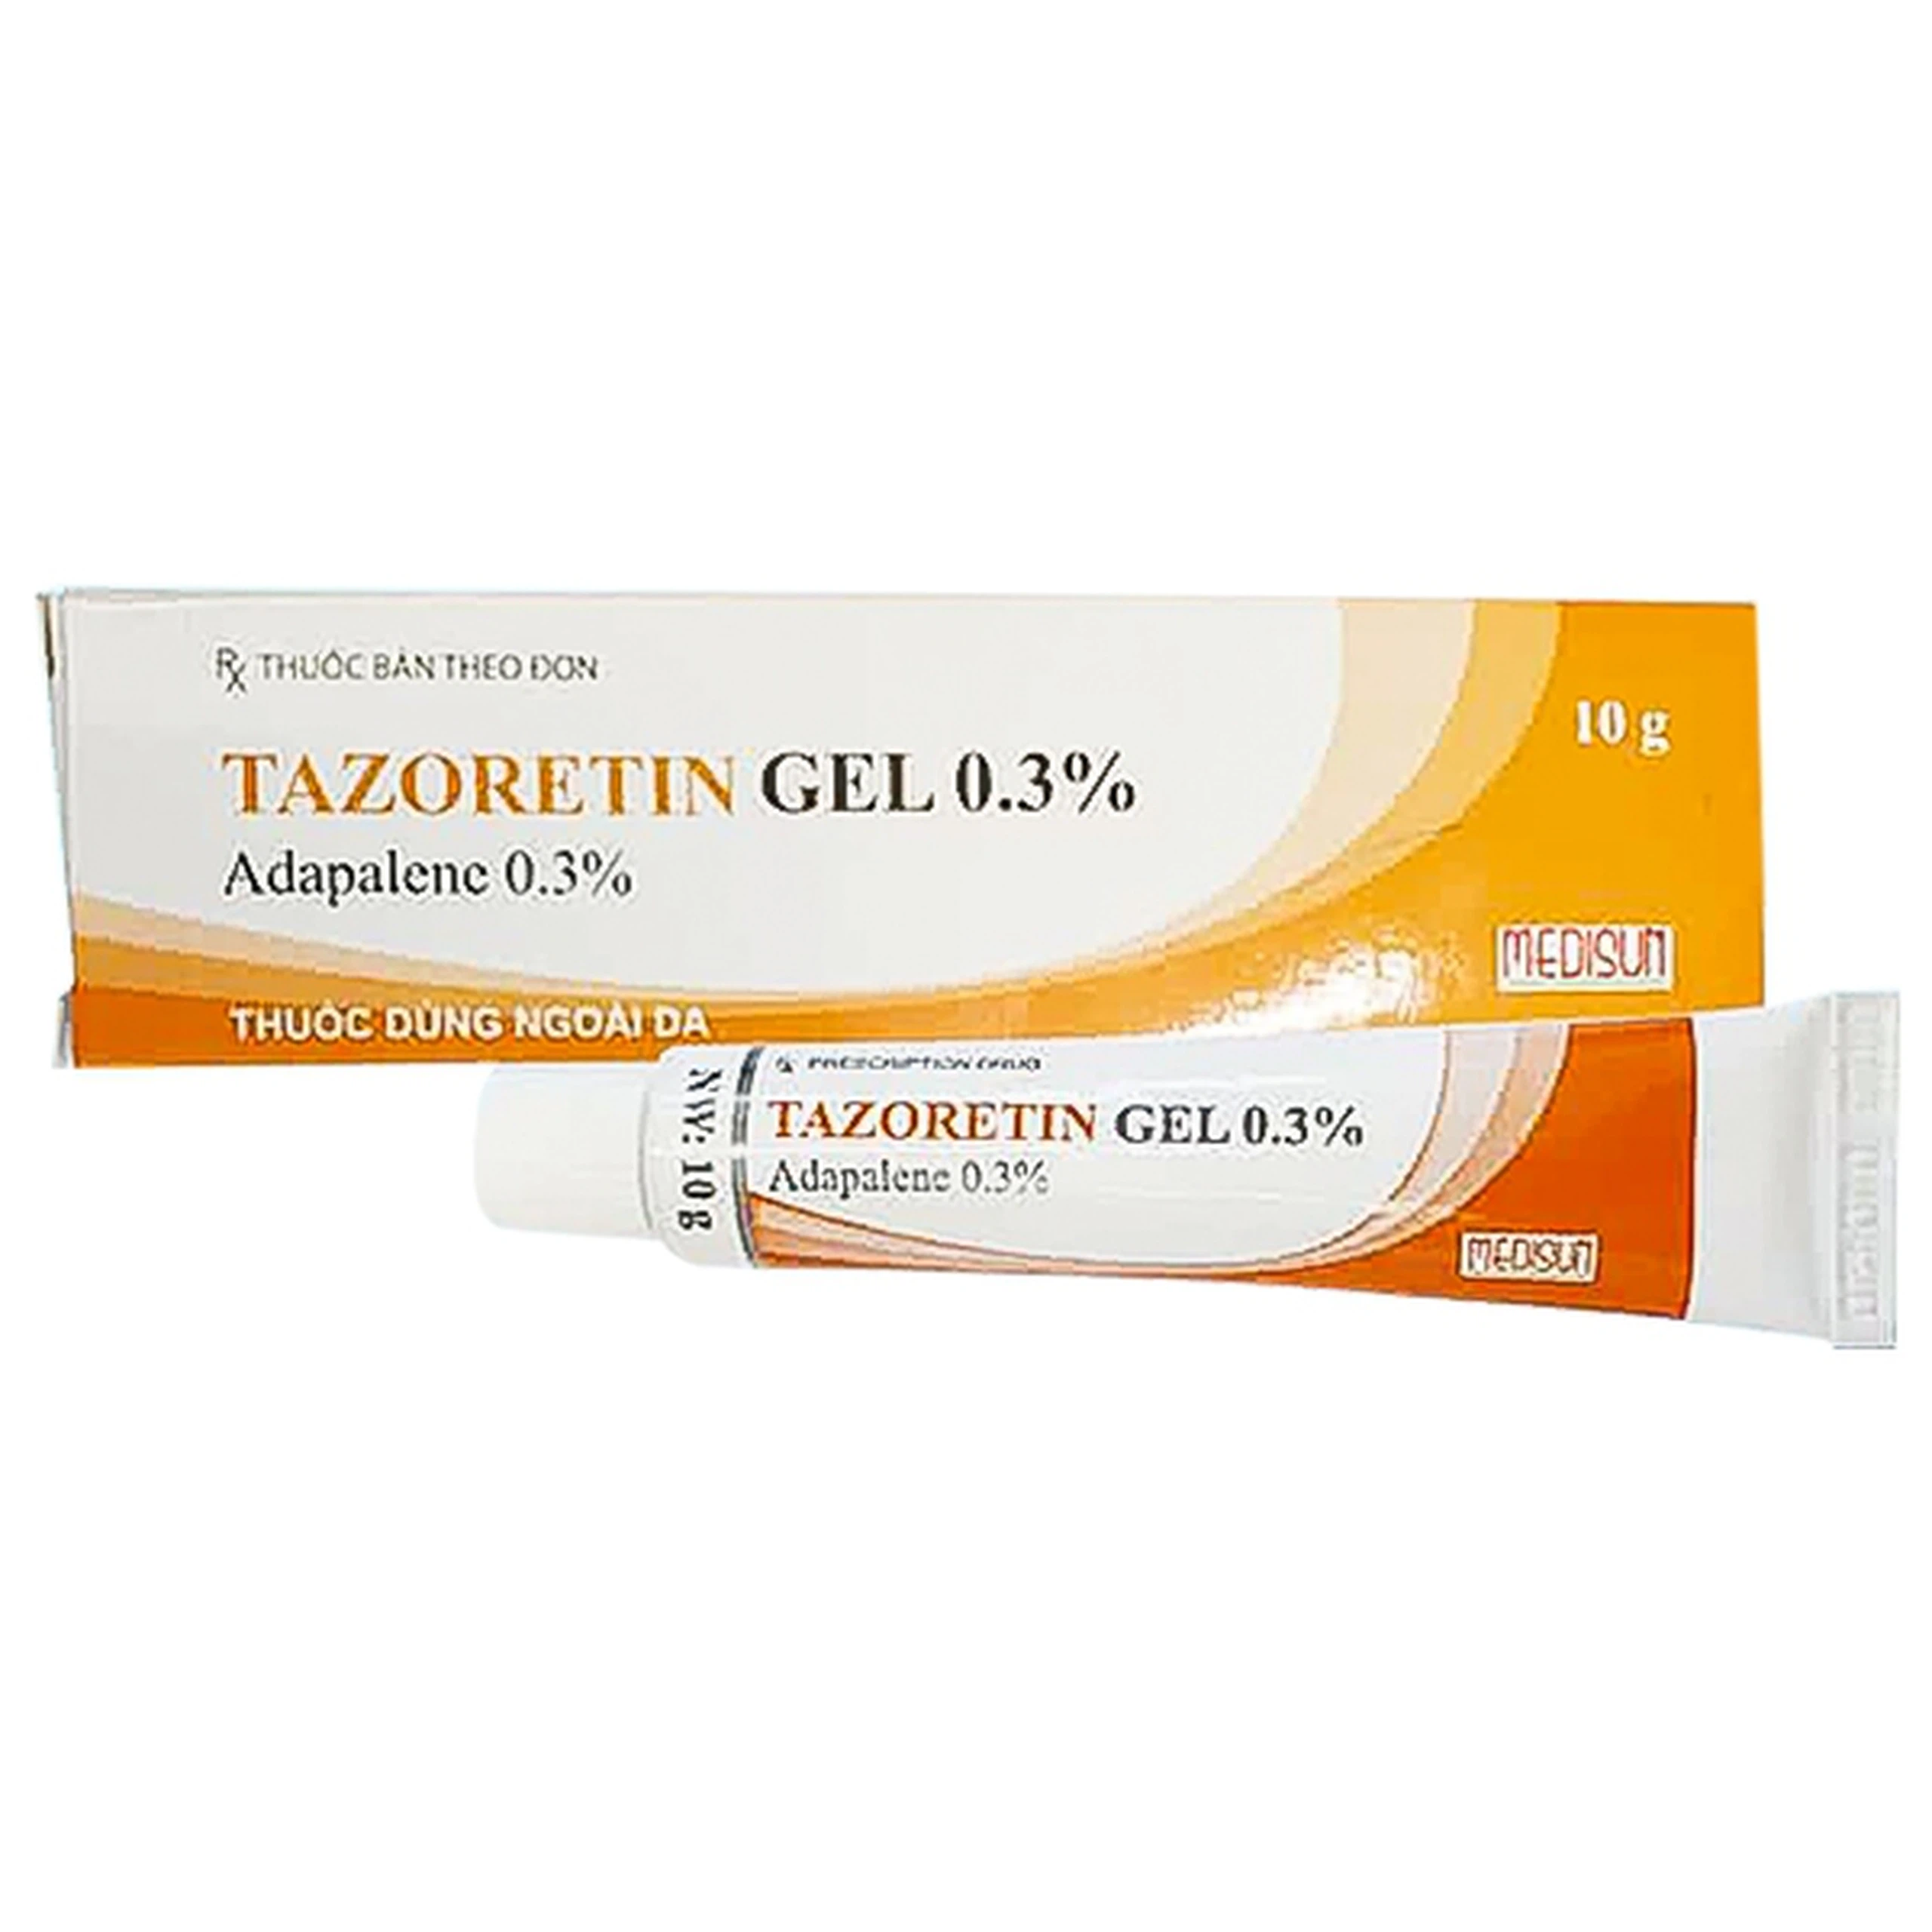 Thuốc dùng ngoài da Tazoretin Gel 0.3% Medisun điều trị mụn trứng cá (10g)